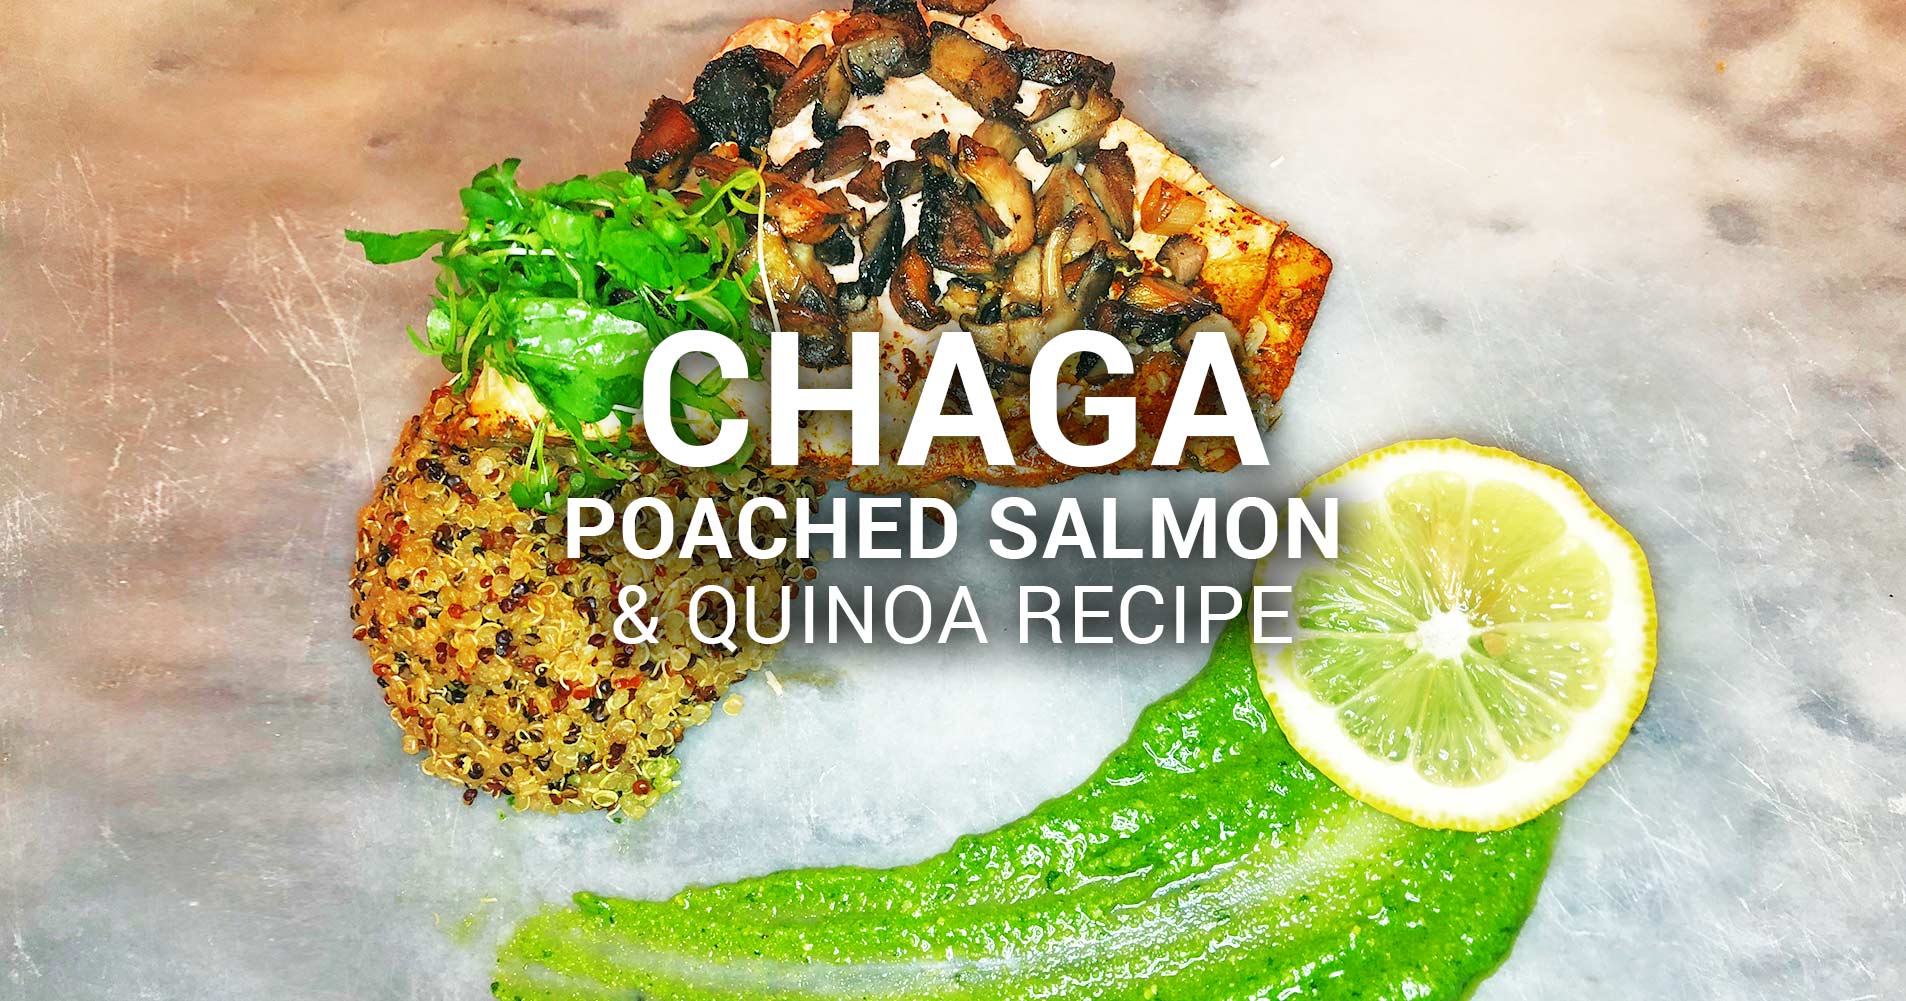 Chaga Poached Salmon and Quinoa Recipe